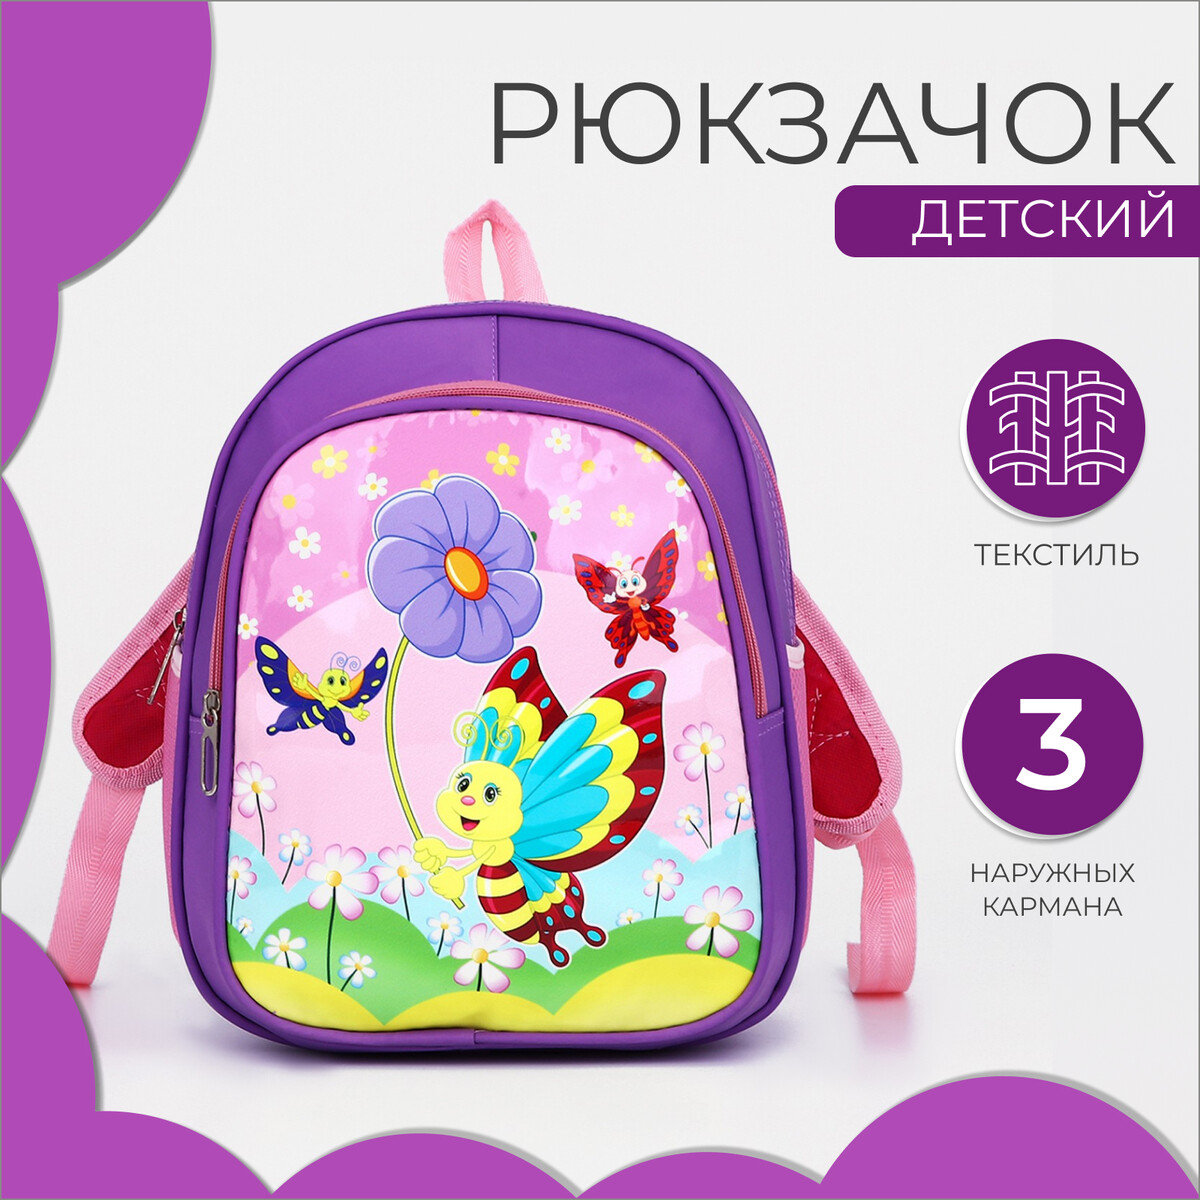 Рюкзак детский на молнии, 3 наружных кармана, цвет фиолетовый беговел leonardo детский двухколесный фиолетовый